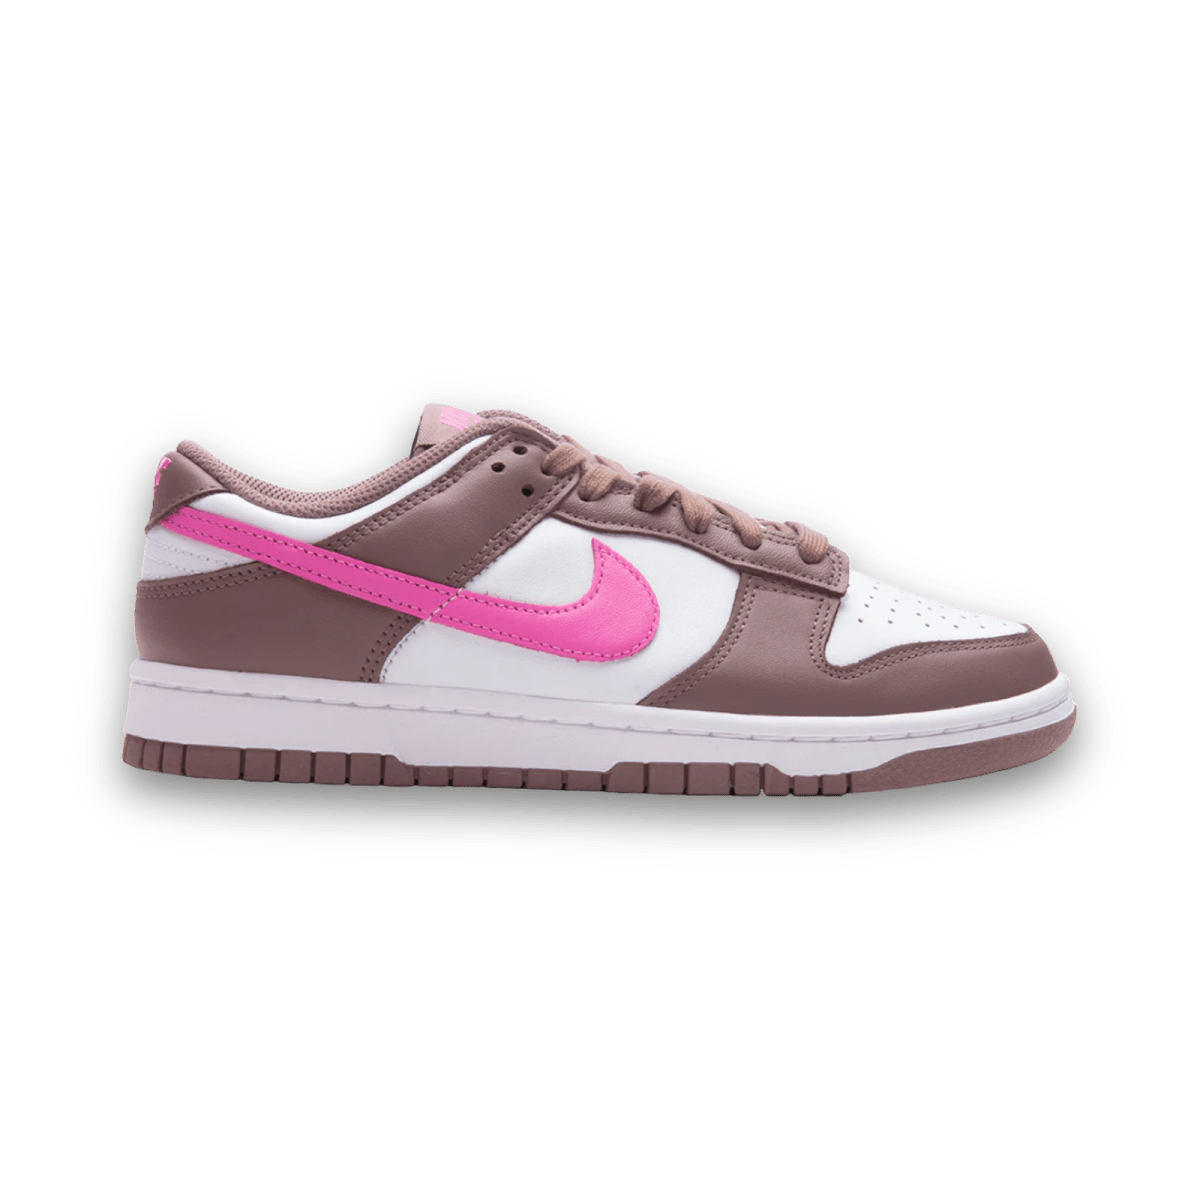 Dunk Low 'Smokey Mauve Playful Pink'- Women - Low Sneaker - Jawns on Fire Sneakers & Streetwear